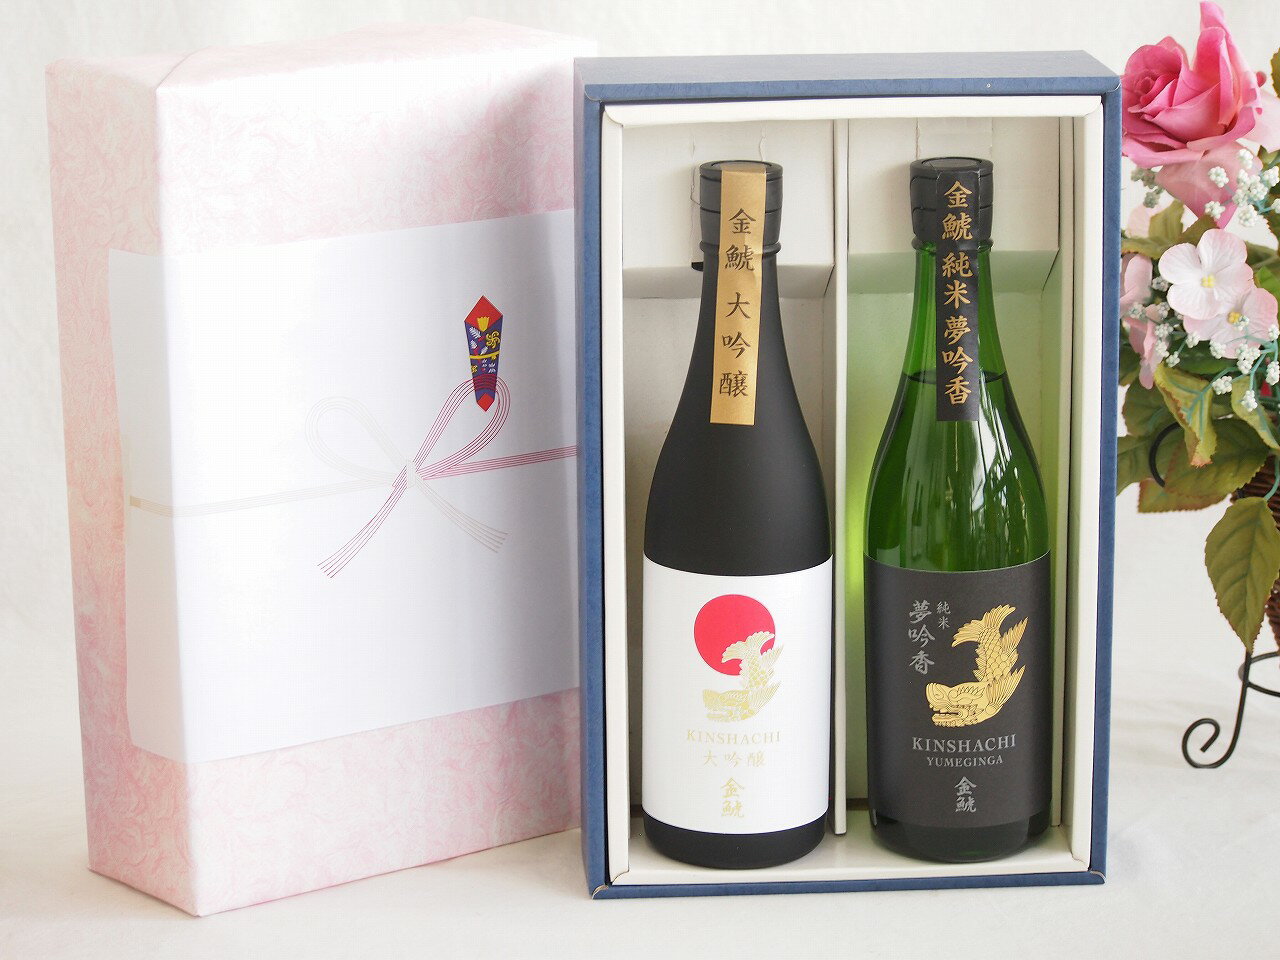 贅沢な日本酒感謝ボックス2本セット(金鯱純米夢吟香(愛知) 金鯱大吟醸(愛知)) 720ml×2本